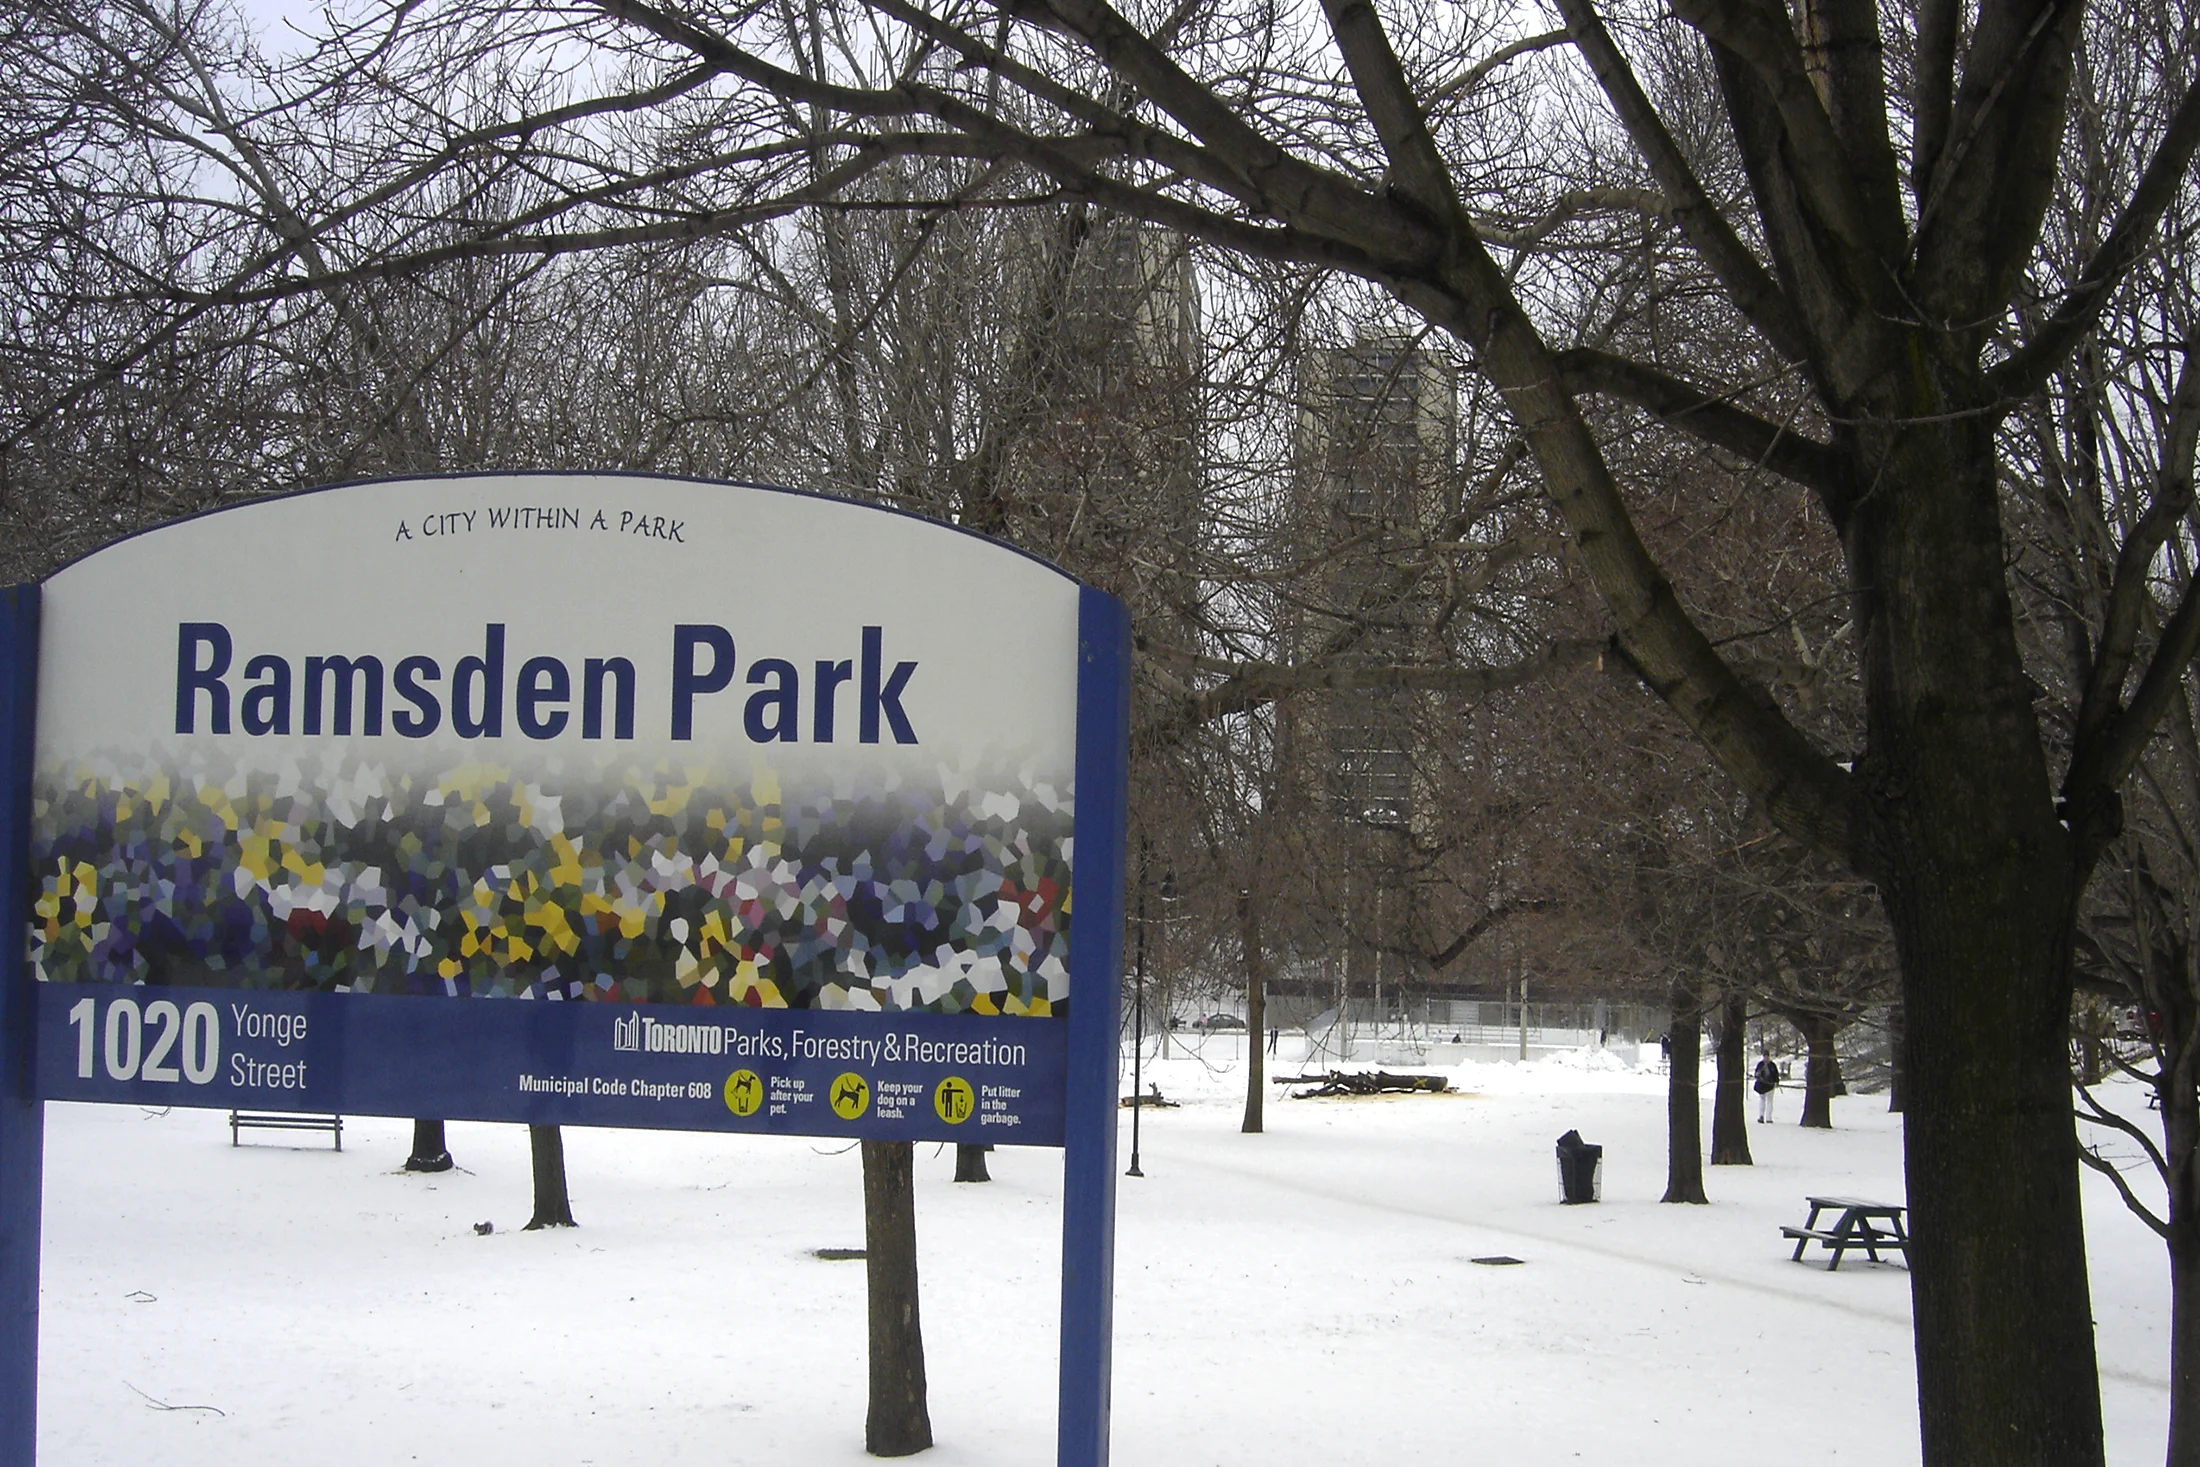 Ramsden Park sign in winter